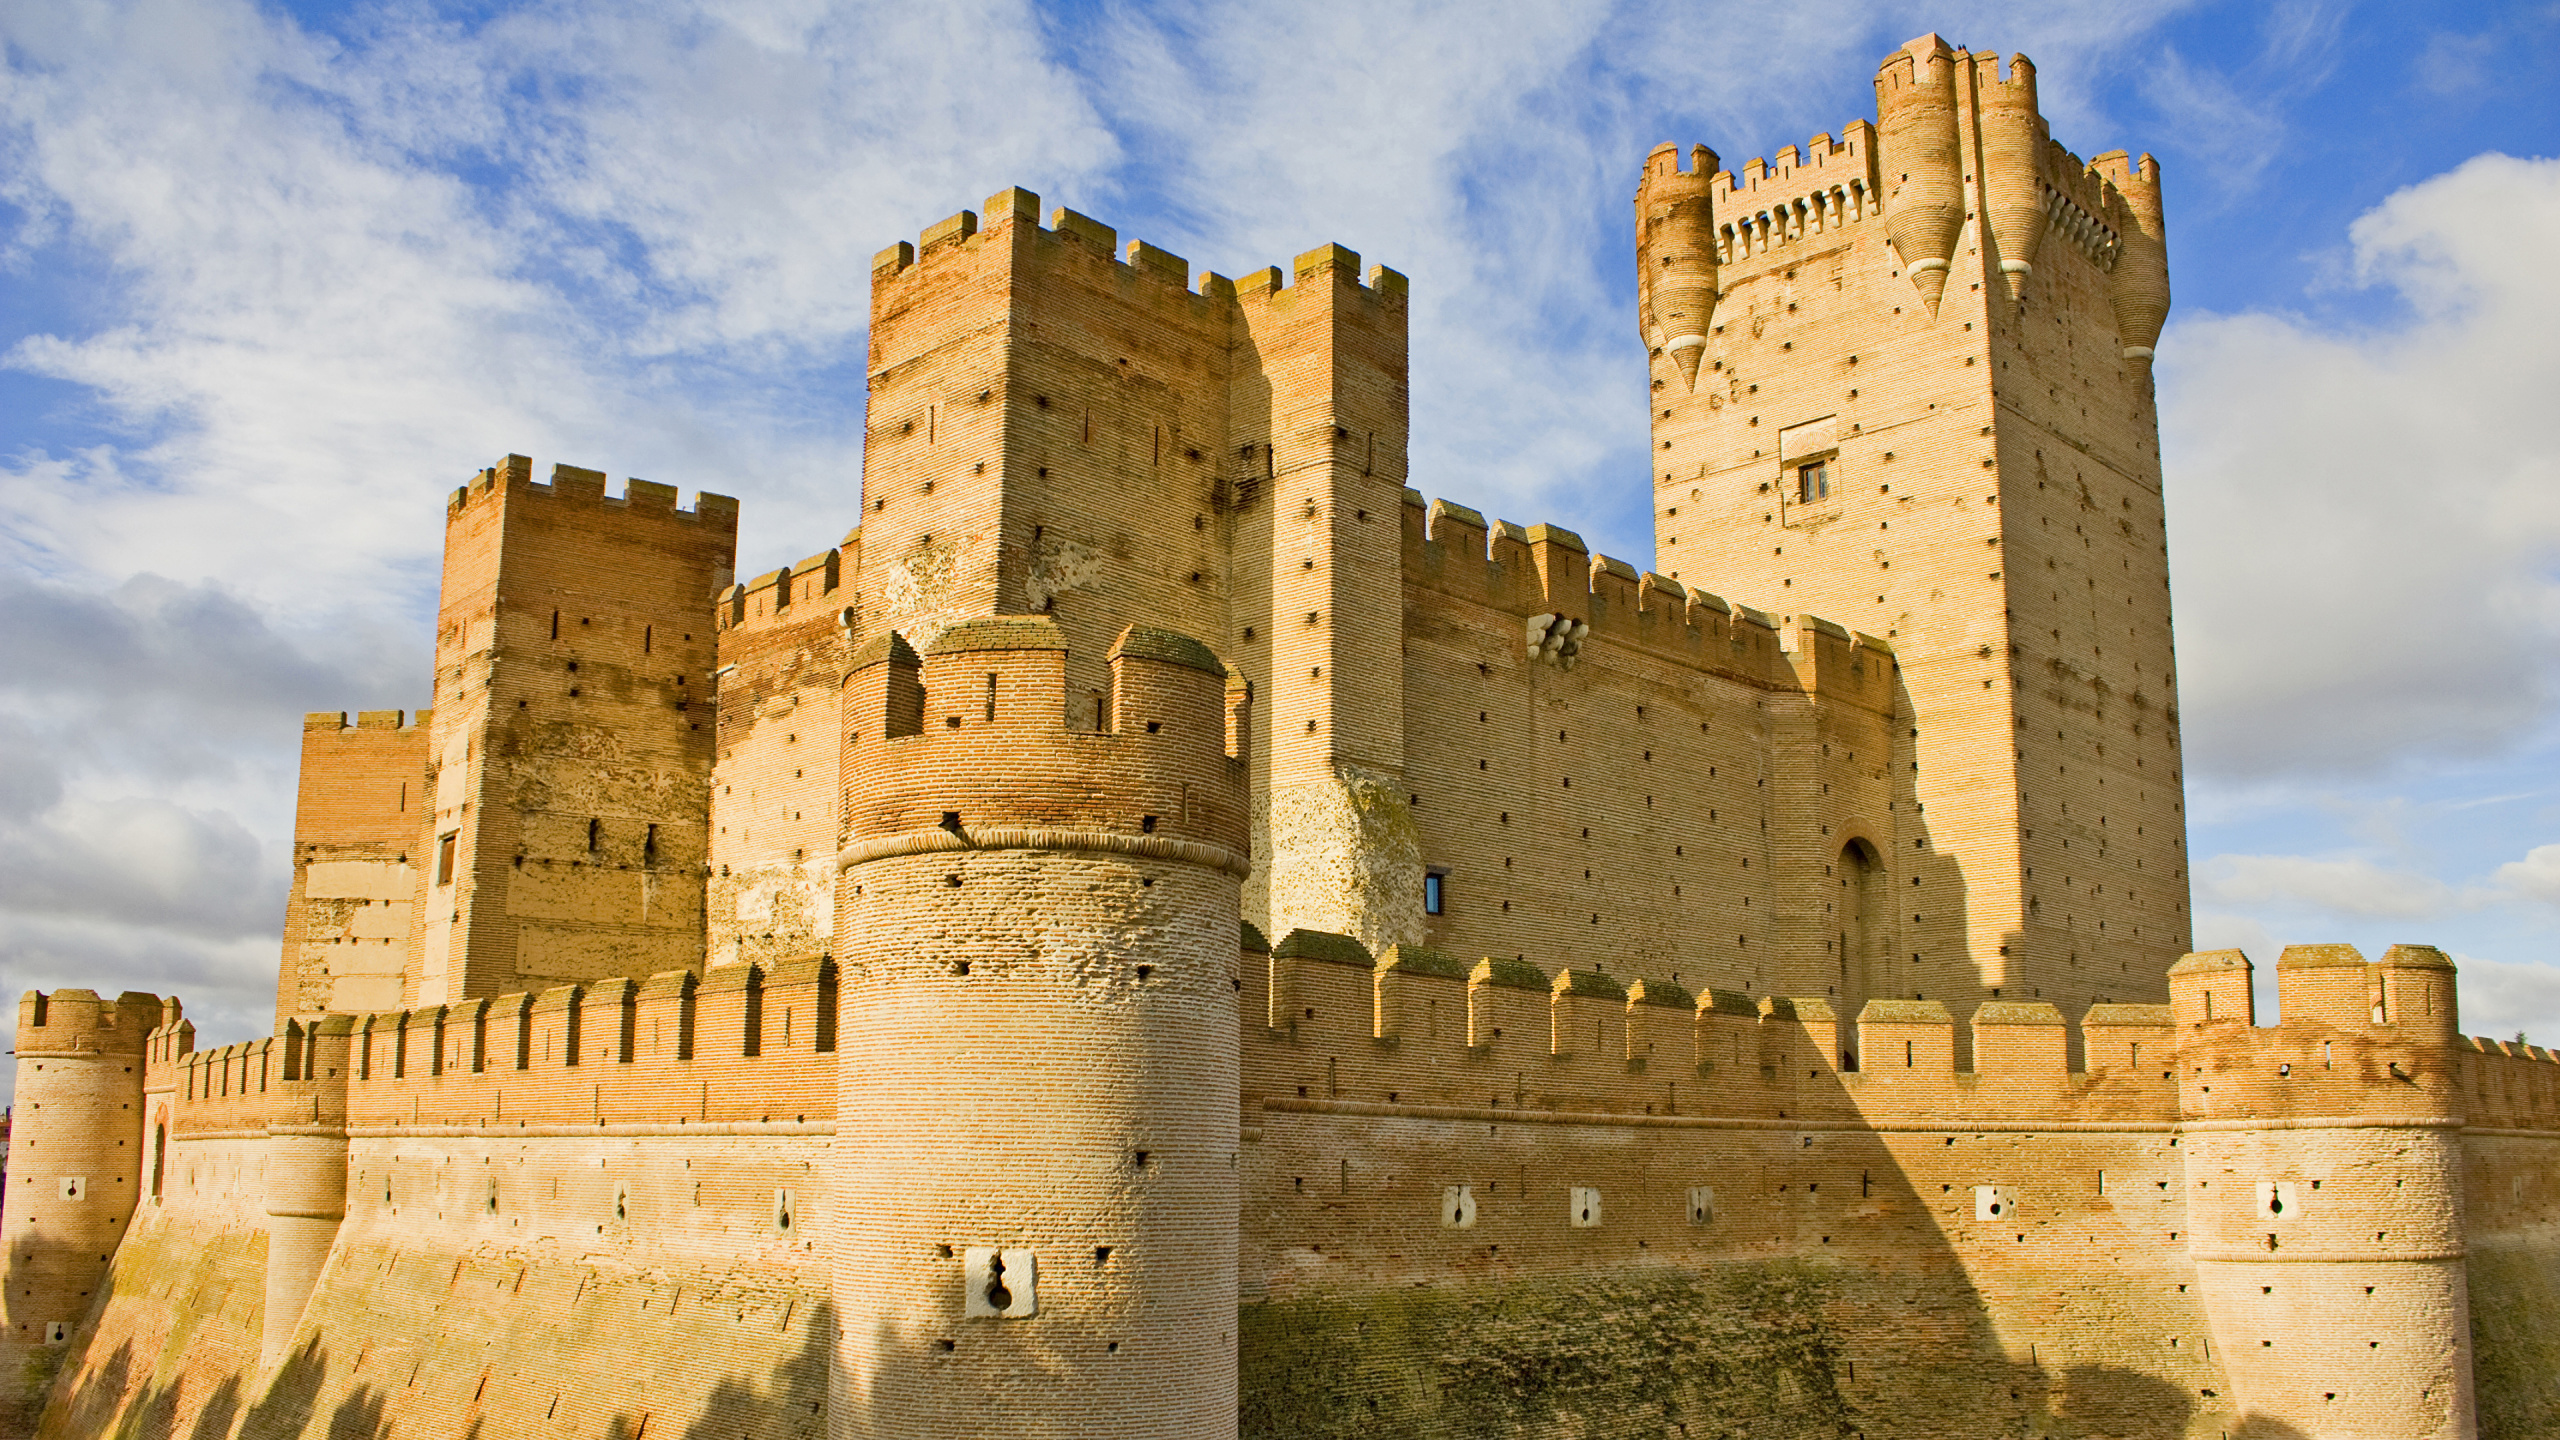 城堡, 防御工事, 历史站, 里程碑, 中世纪建筑风格 壁纸 2560x1440 允许